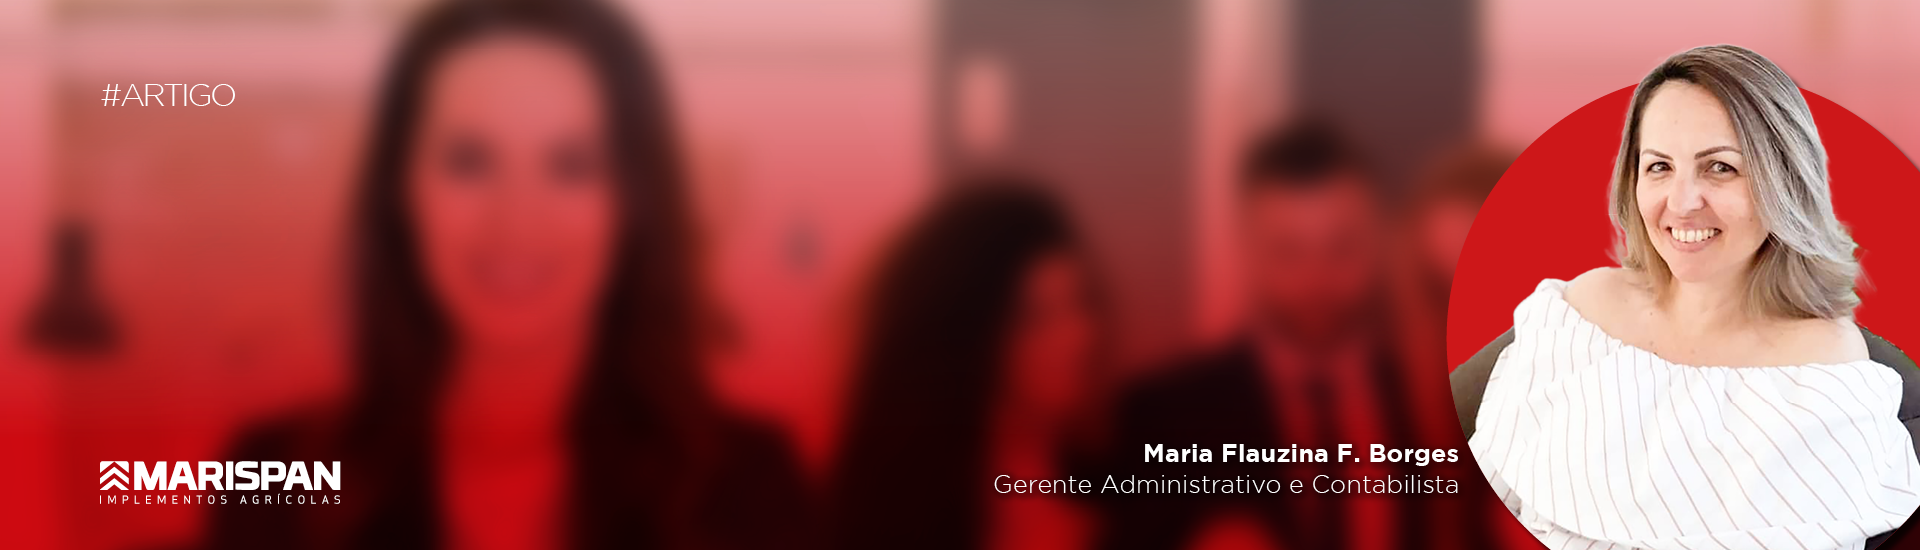 Na Semana das Mulheres, Marispan comemora presença feminina em cargos de liderança 